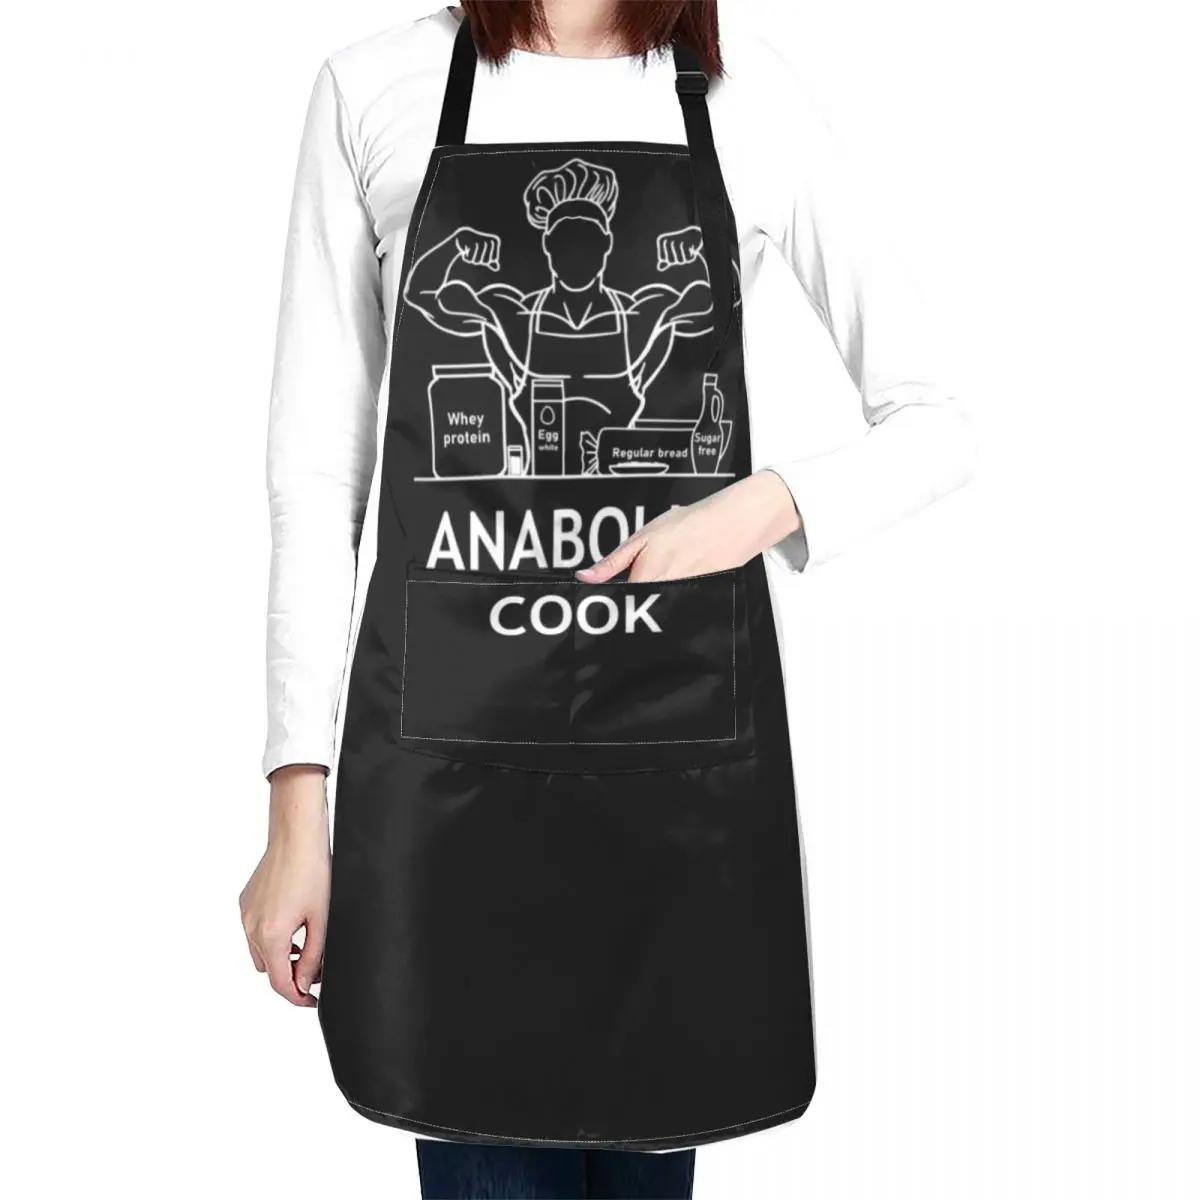 

Анаболический повар: фартук темного дизайна, кухонная одежда для мужчин, полезные кухонные и бытовые товары для кухни